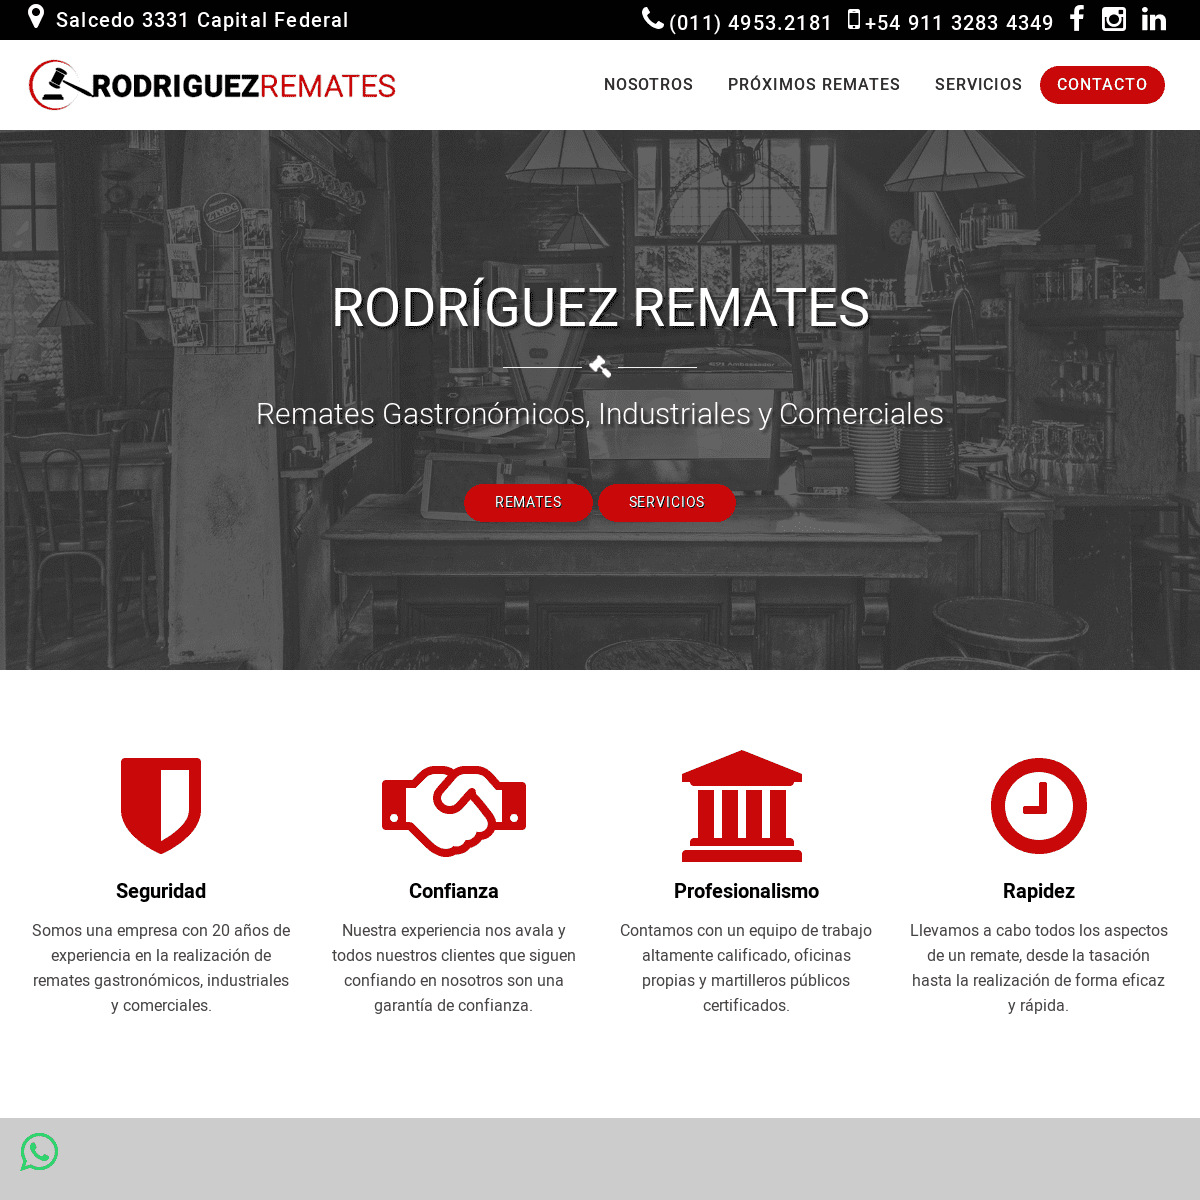 A complete backup of rodriguezremates.com.ar